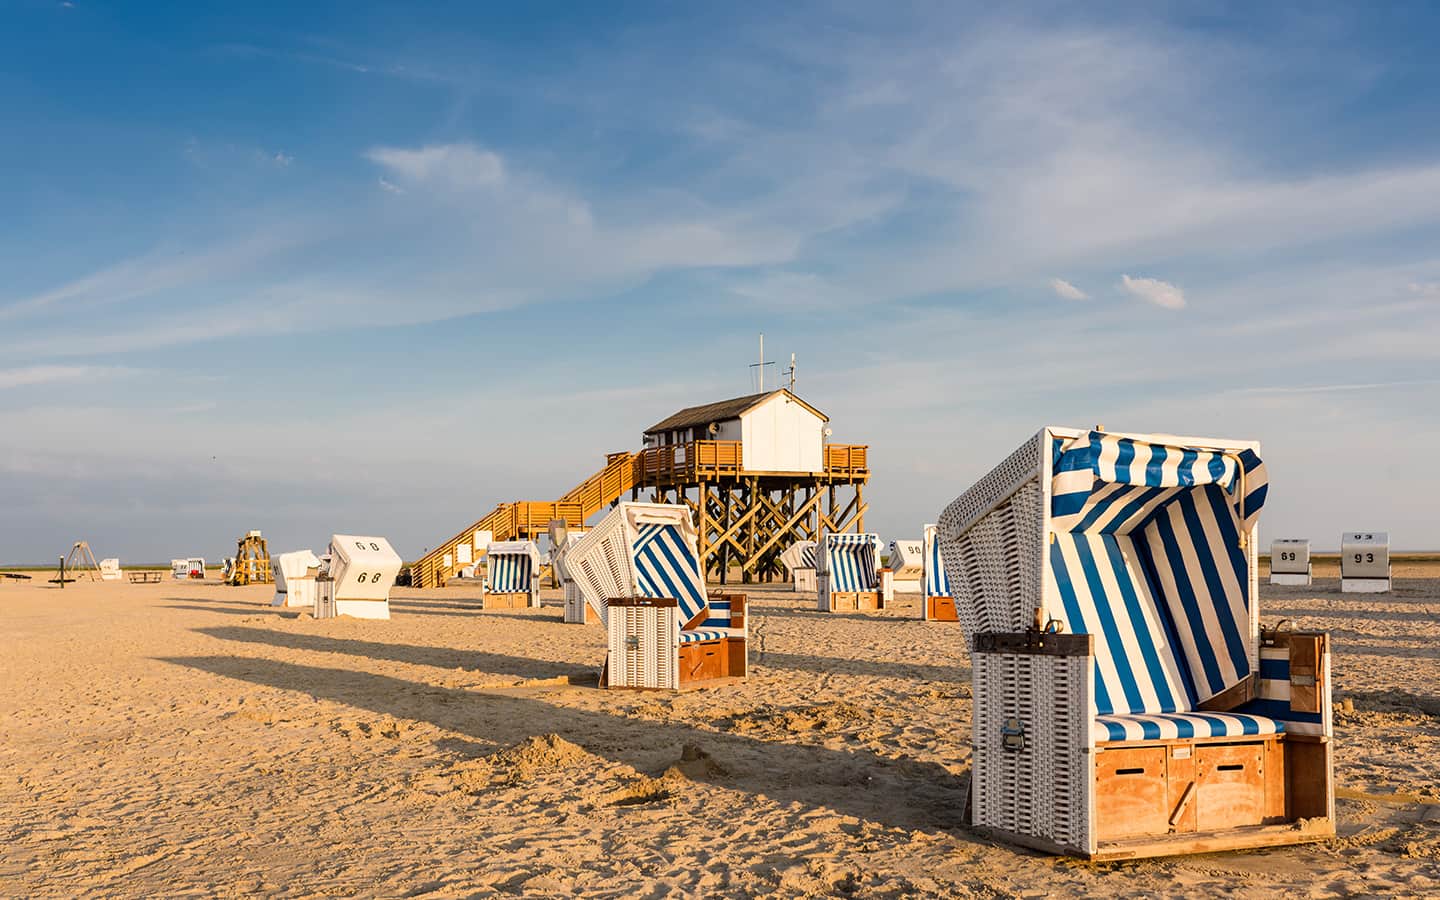 Liegestühle am Strand von St. Peter-Ording; Deutschland